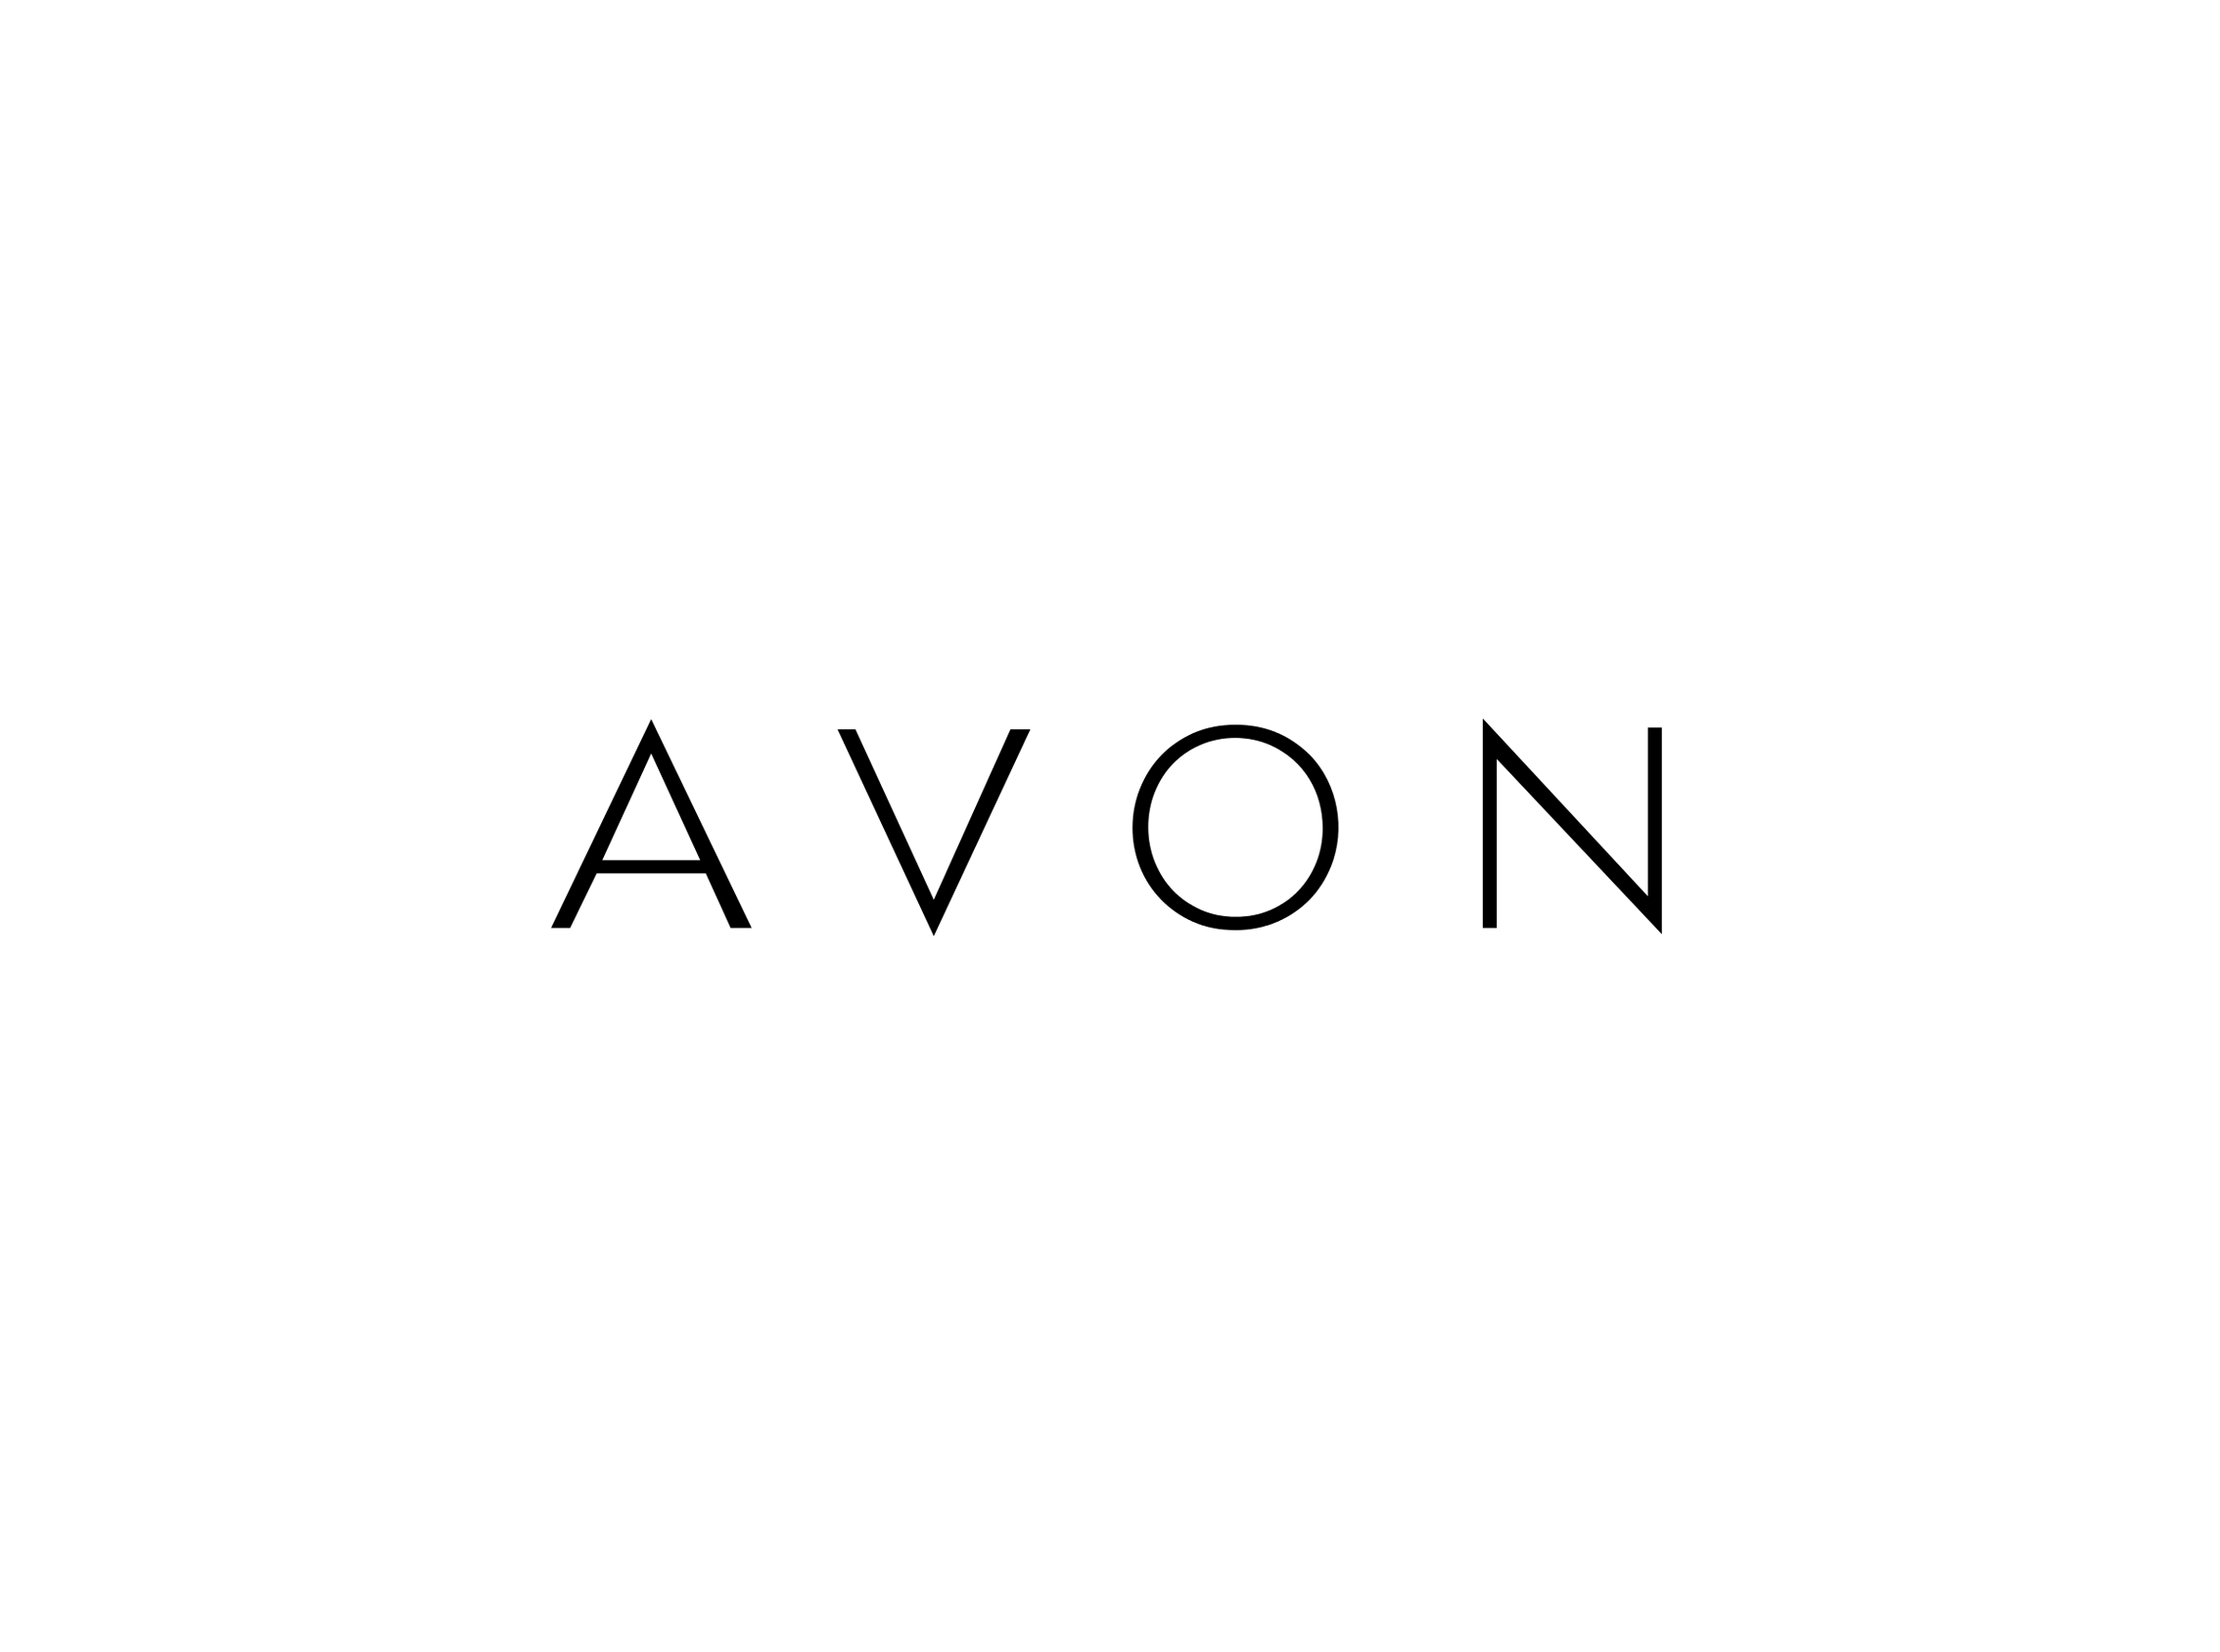 Avon Square Logo - Avon Logos